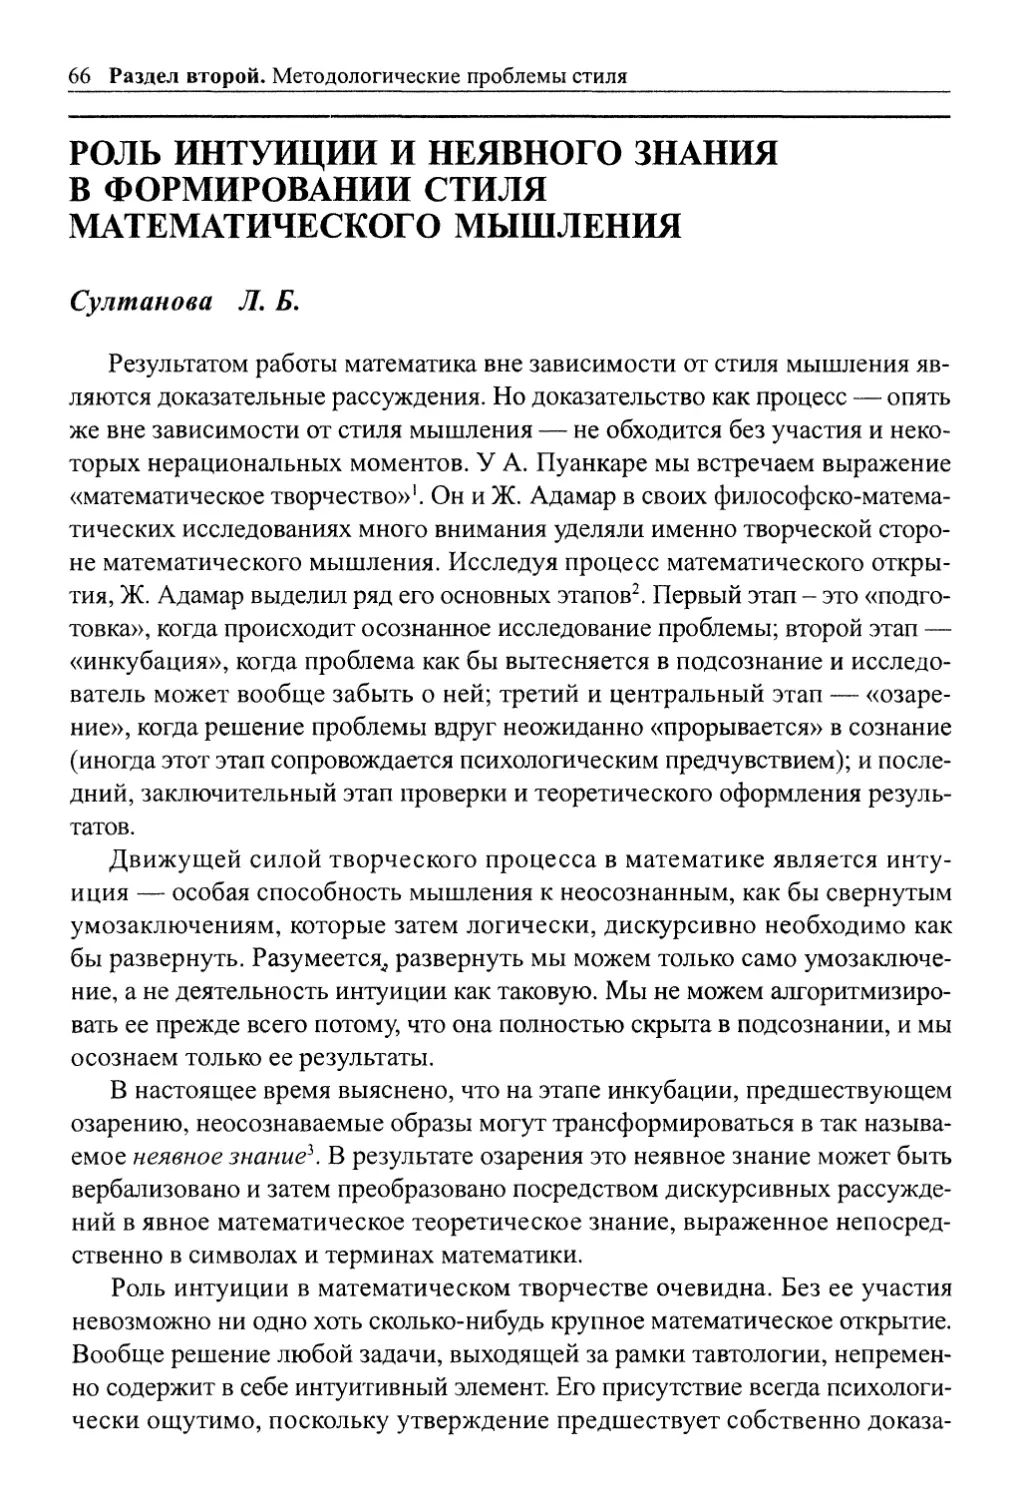 Султанова Л. Б. Роль интуиции и неявного знания в формировании стиля математического мышления